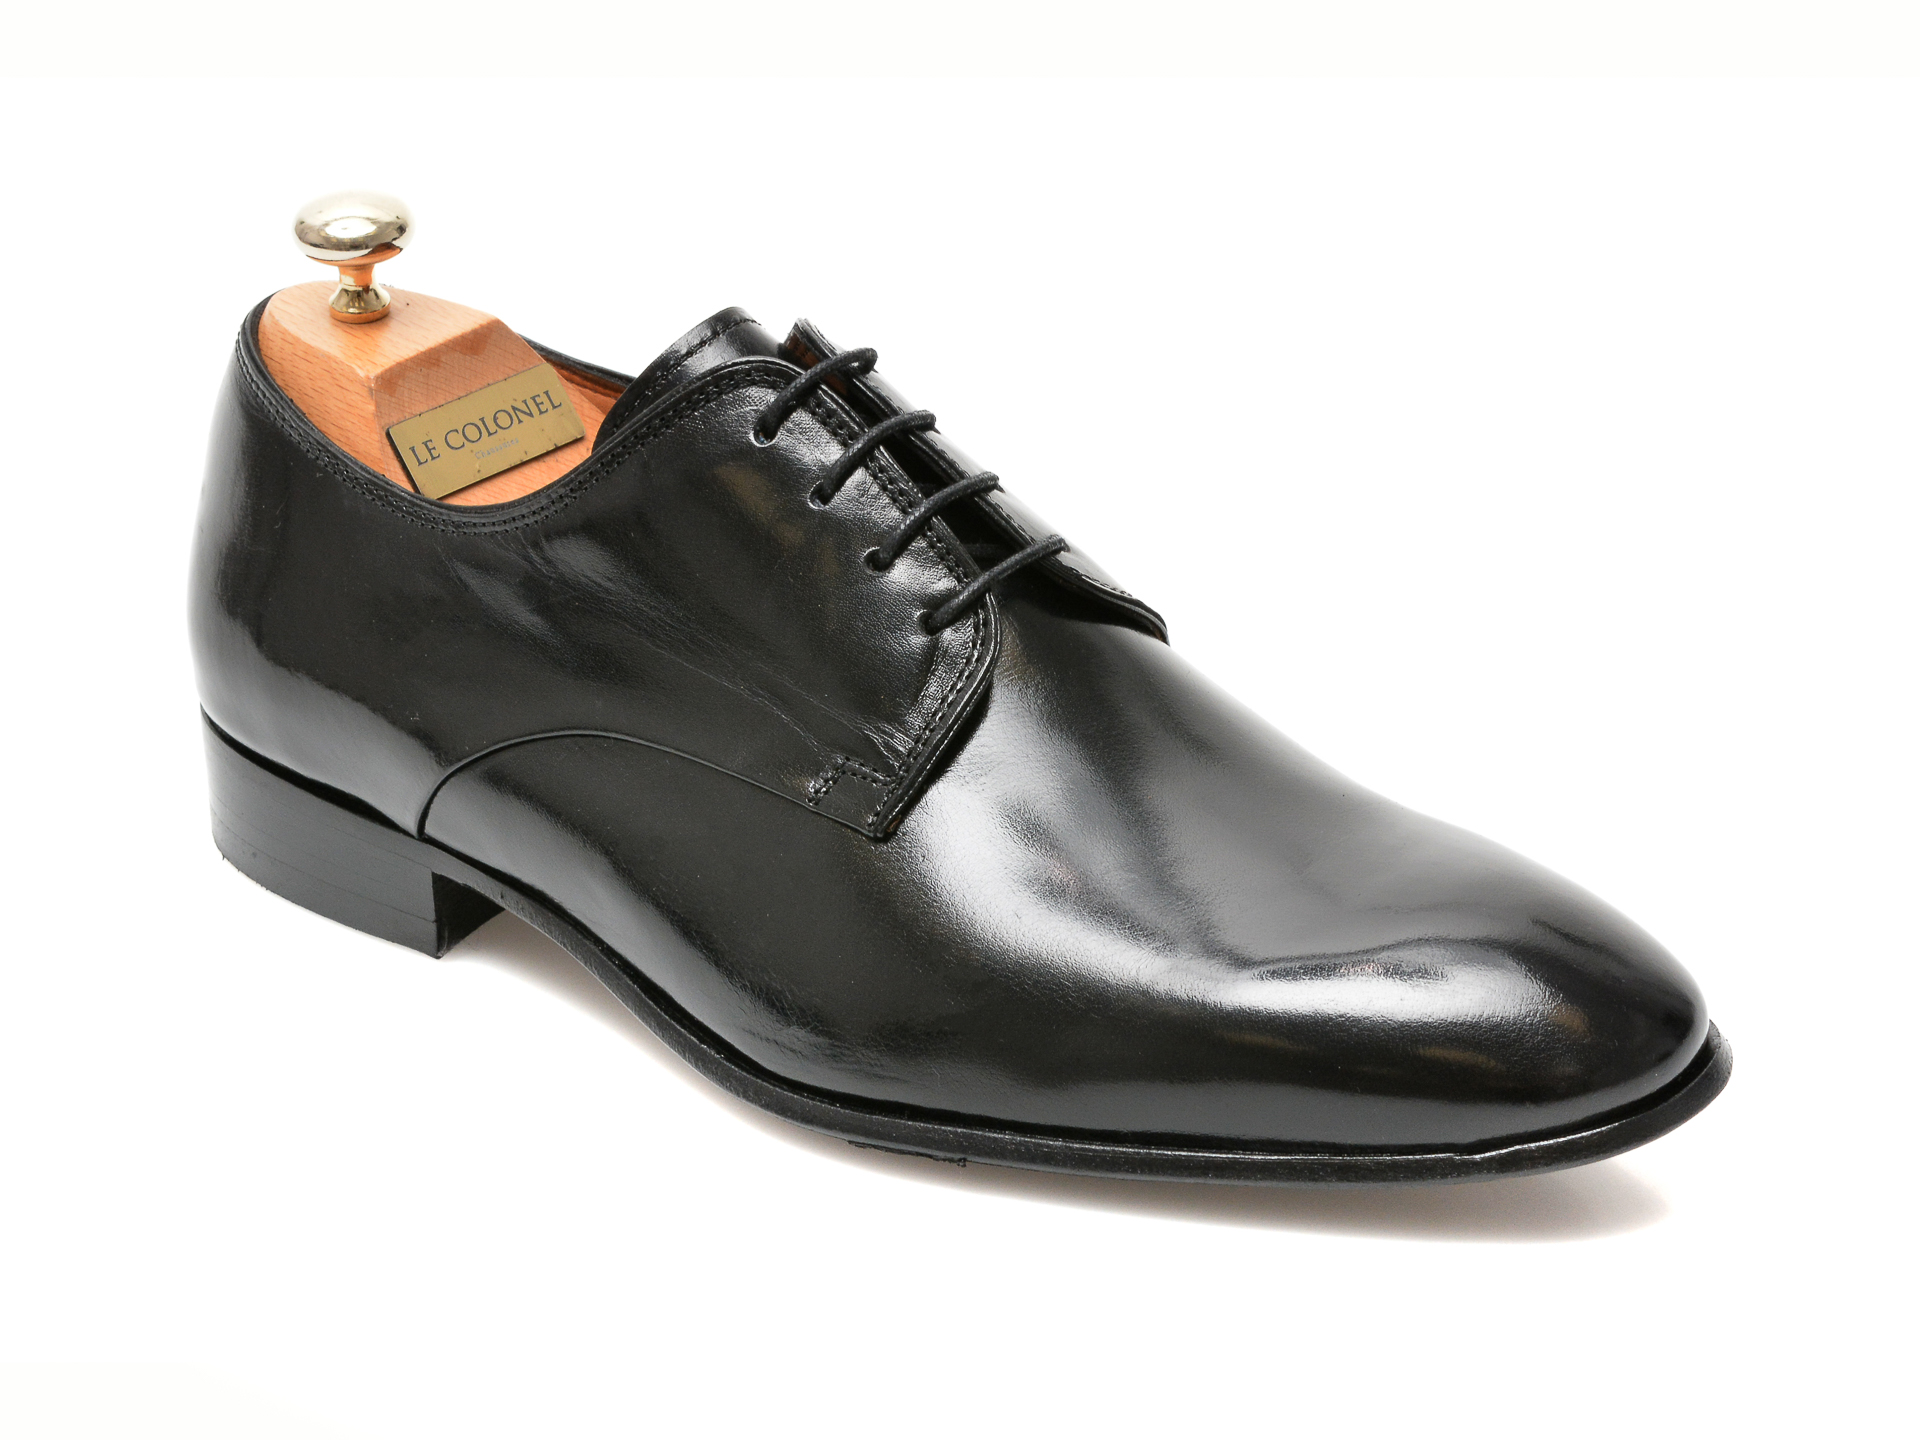 Pantofi LE COLONEL negri, 49817, din piele naturala Le Colonel imagine 2022 reducere